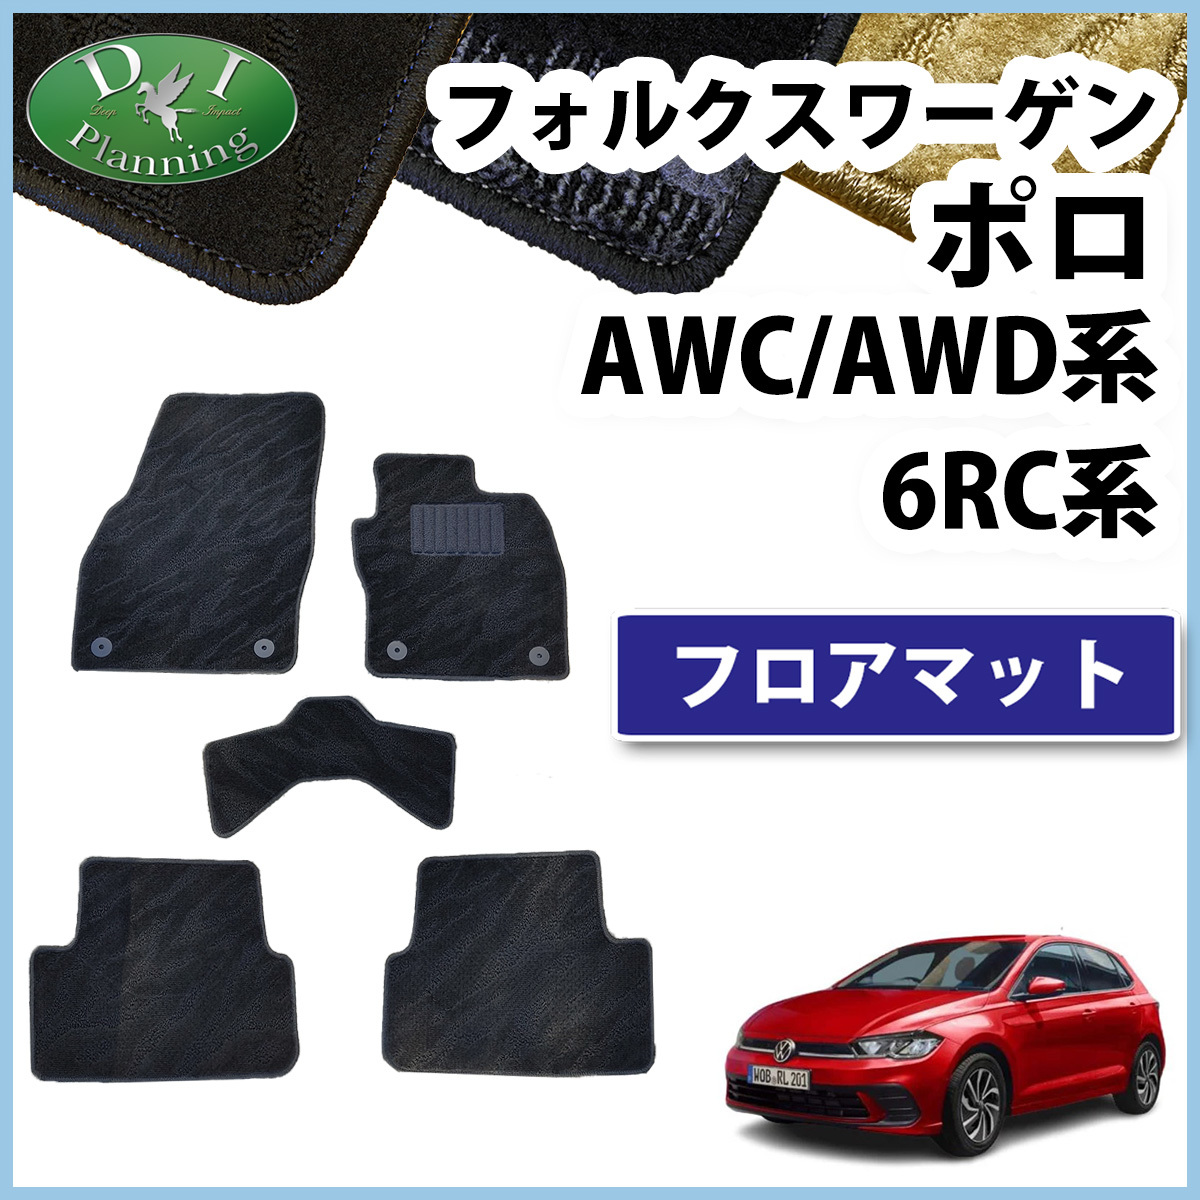  Volkswagen Polo AWC AWC 6RC коврик на пол текстильный узор S автомобильный коврик автомобиль коврик пол чехол для сиденья коврик на пол неоригинальный новый товар детали 